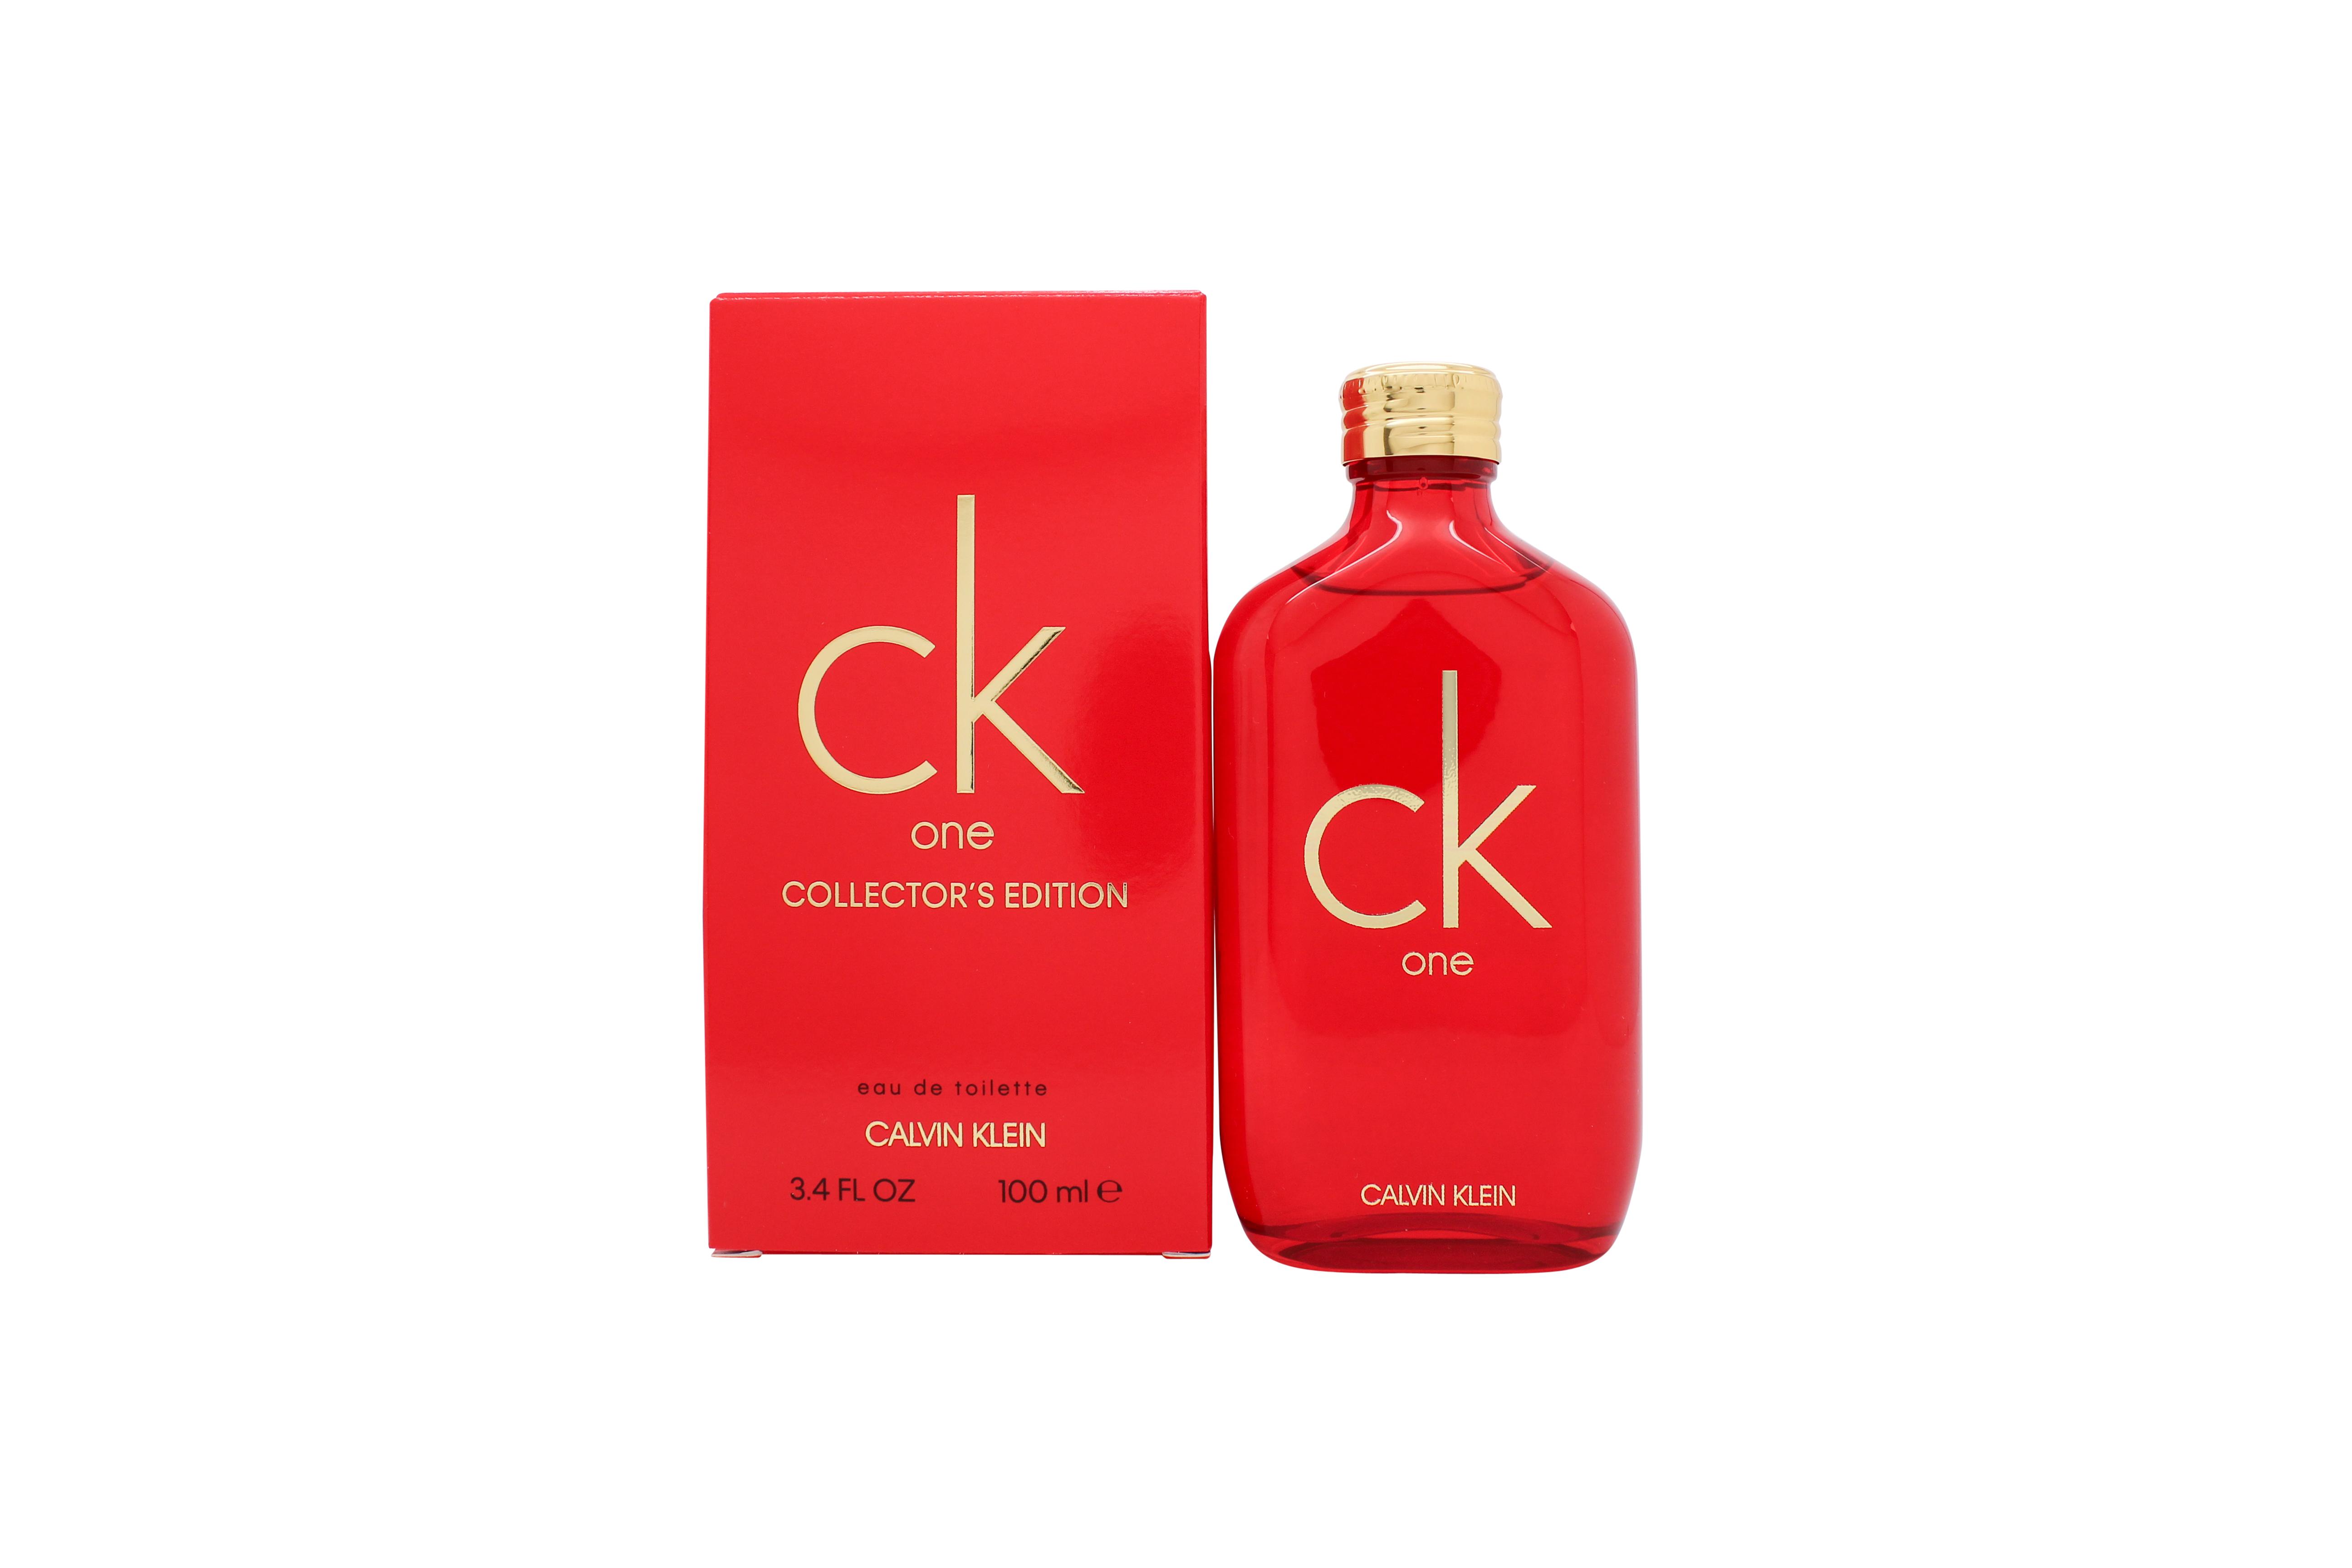 Calvin Klein CK One Eau de Toilette 100ml Spray - Collector's Edition